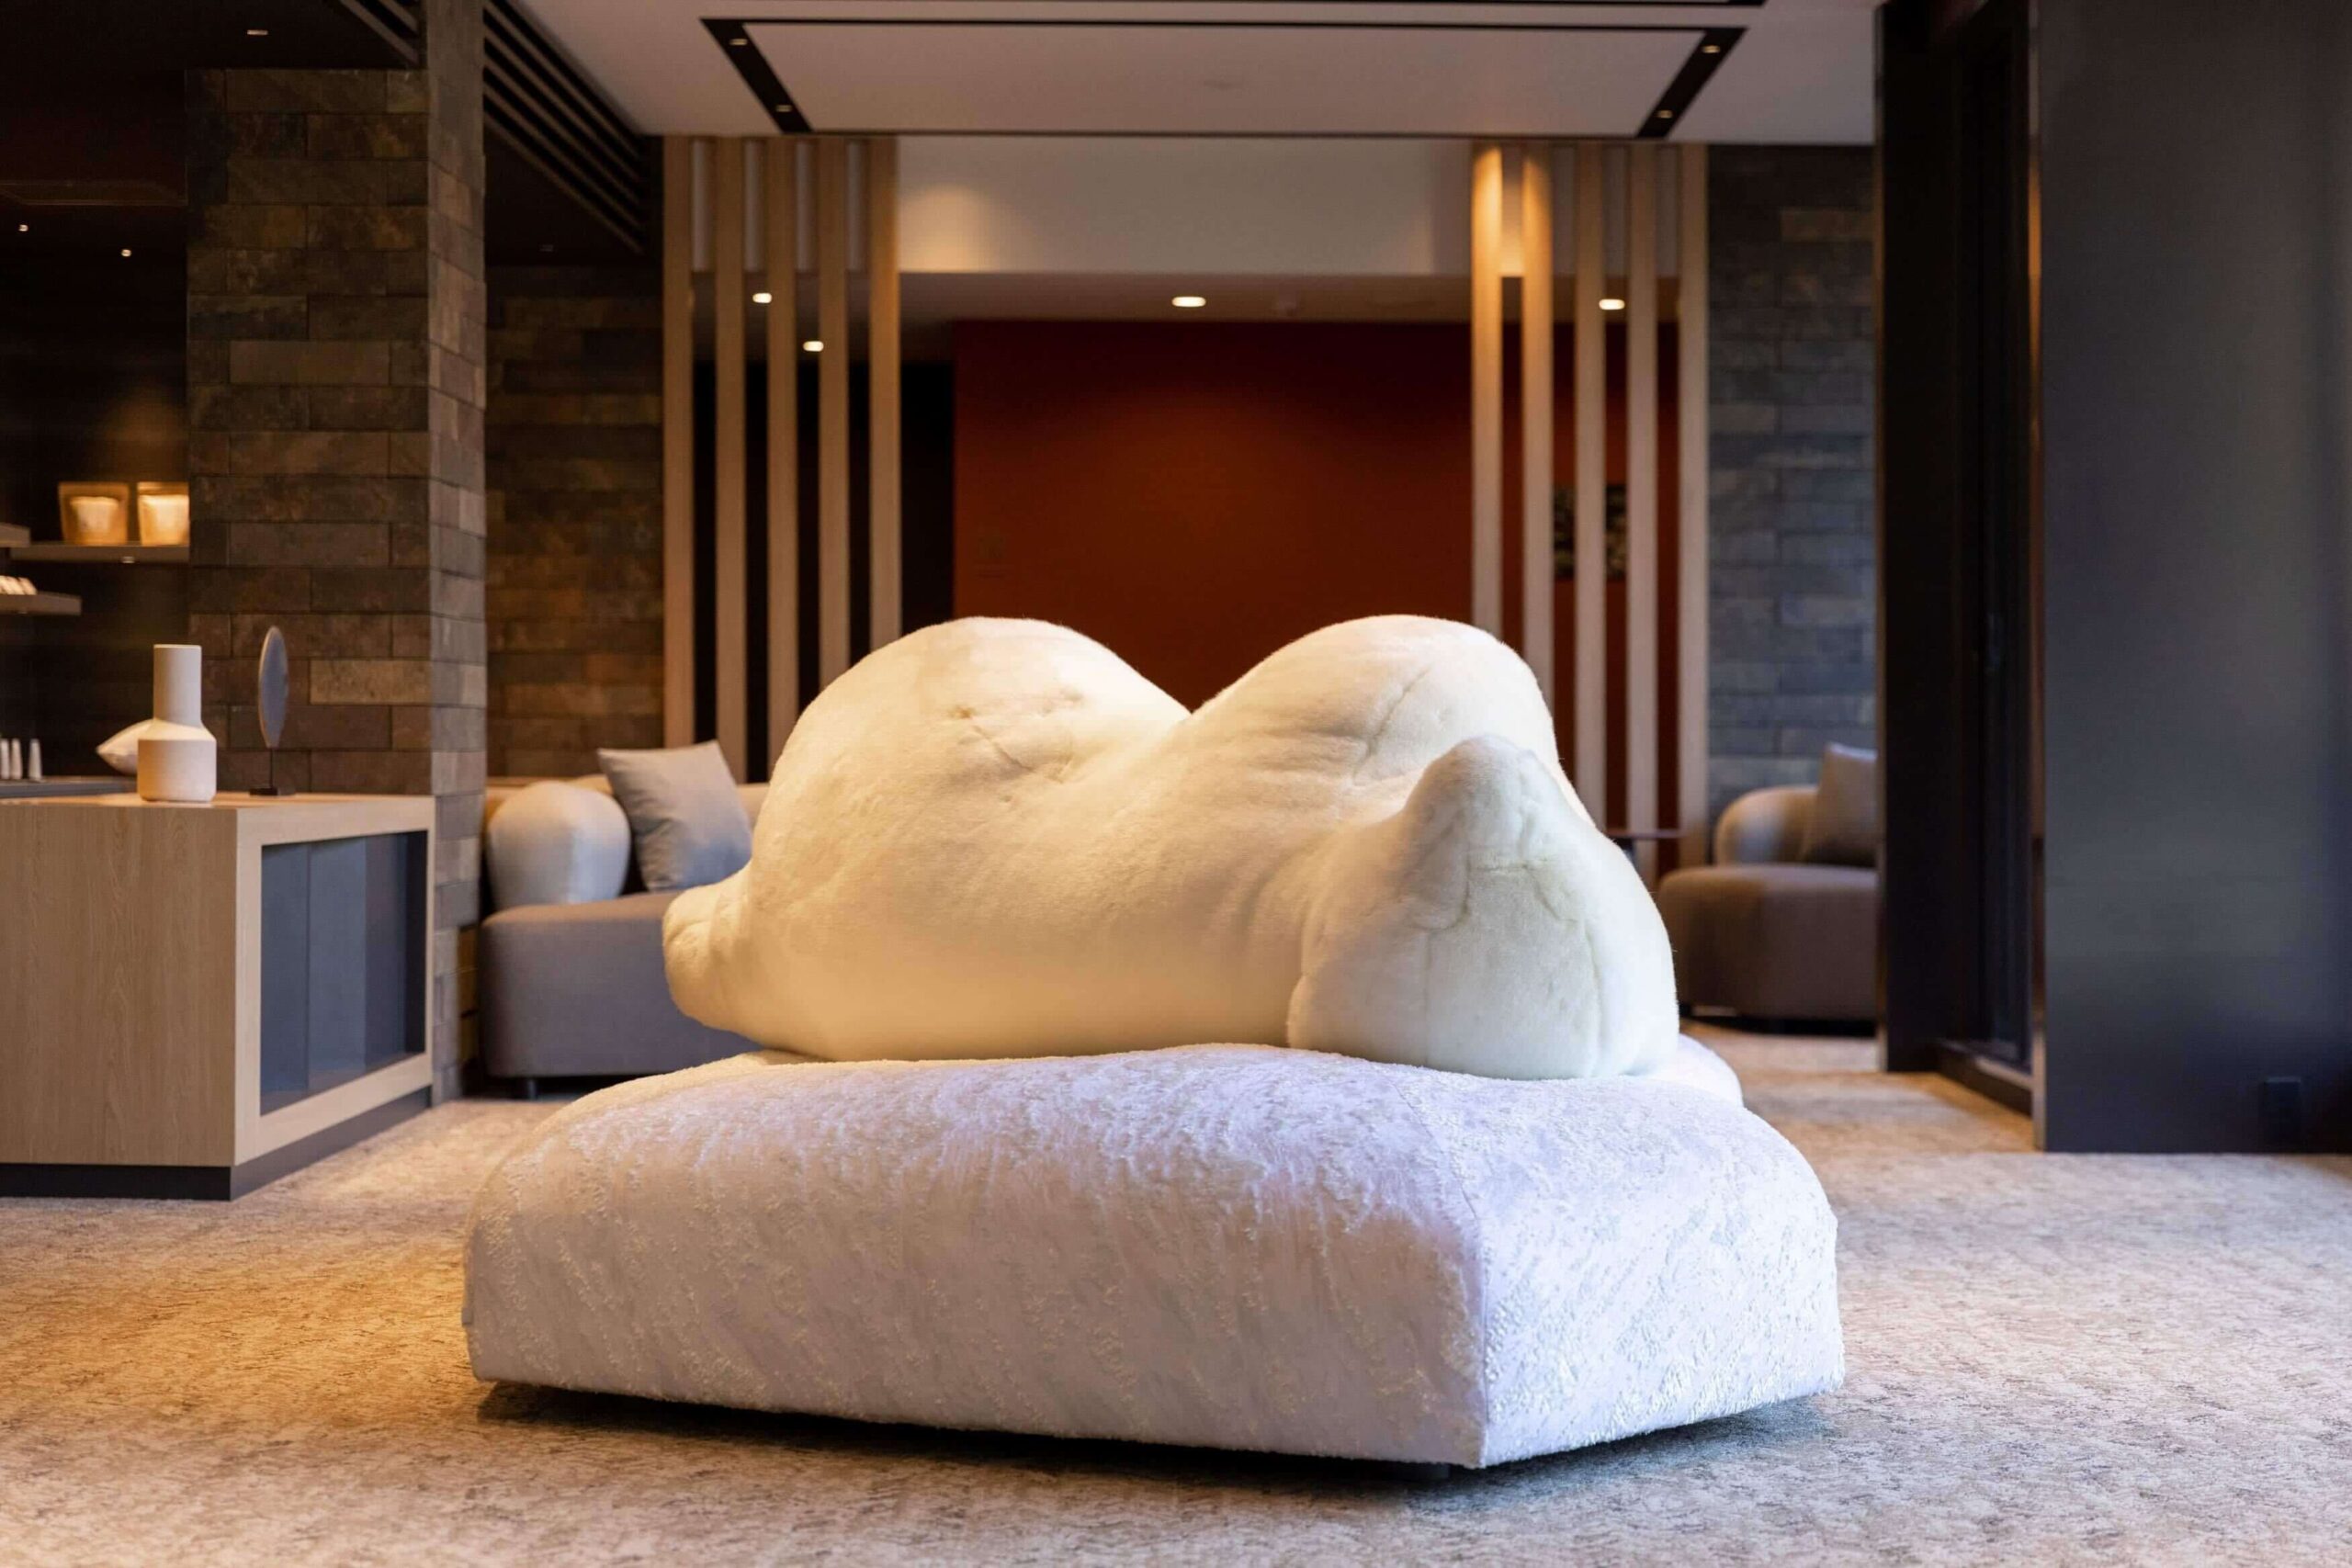 スモールラグジュアリーホテル「仙石原古今」にEdraの家具が設置